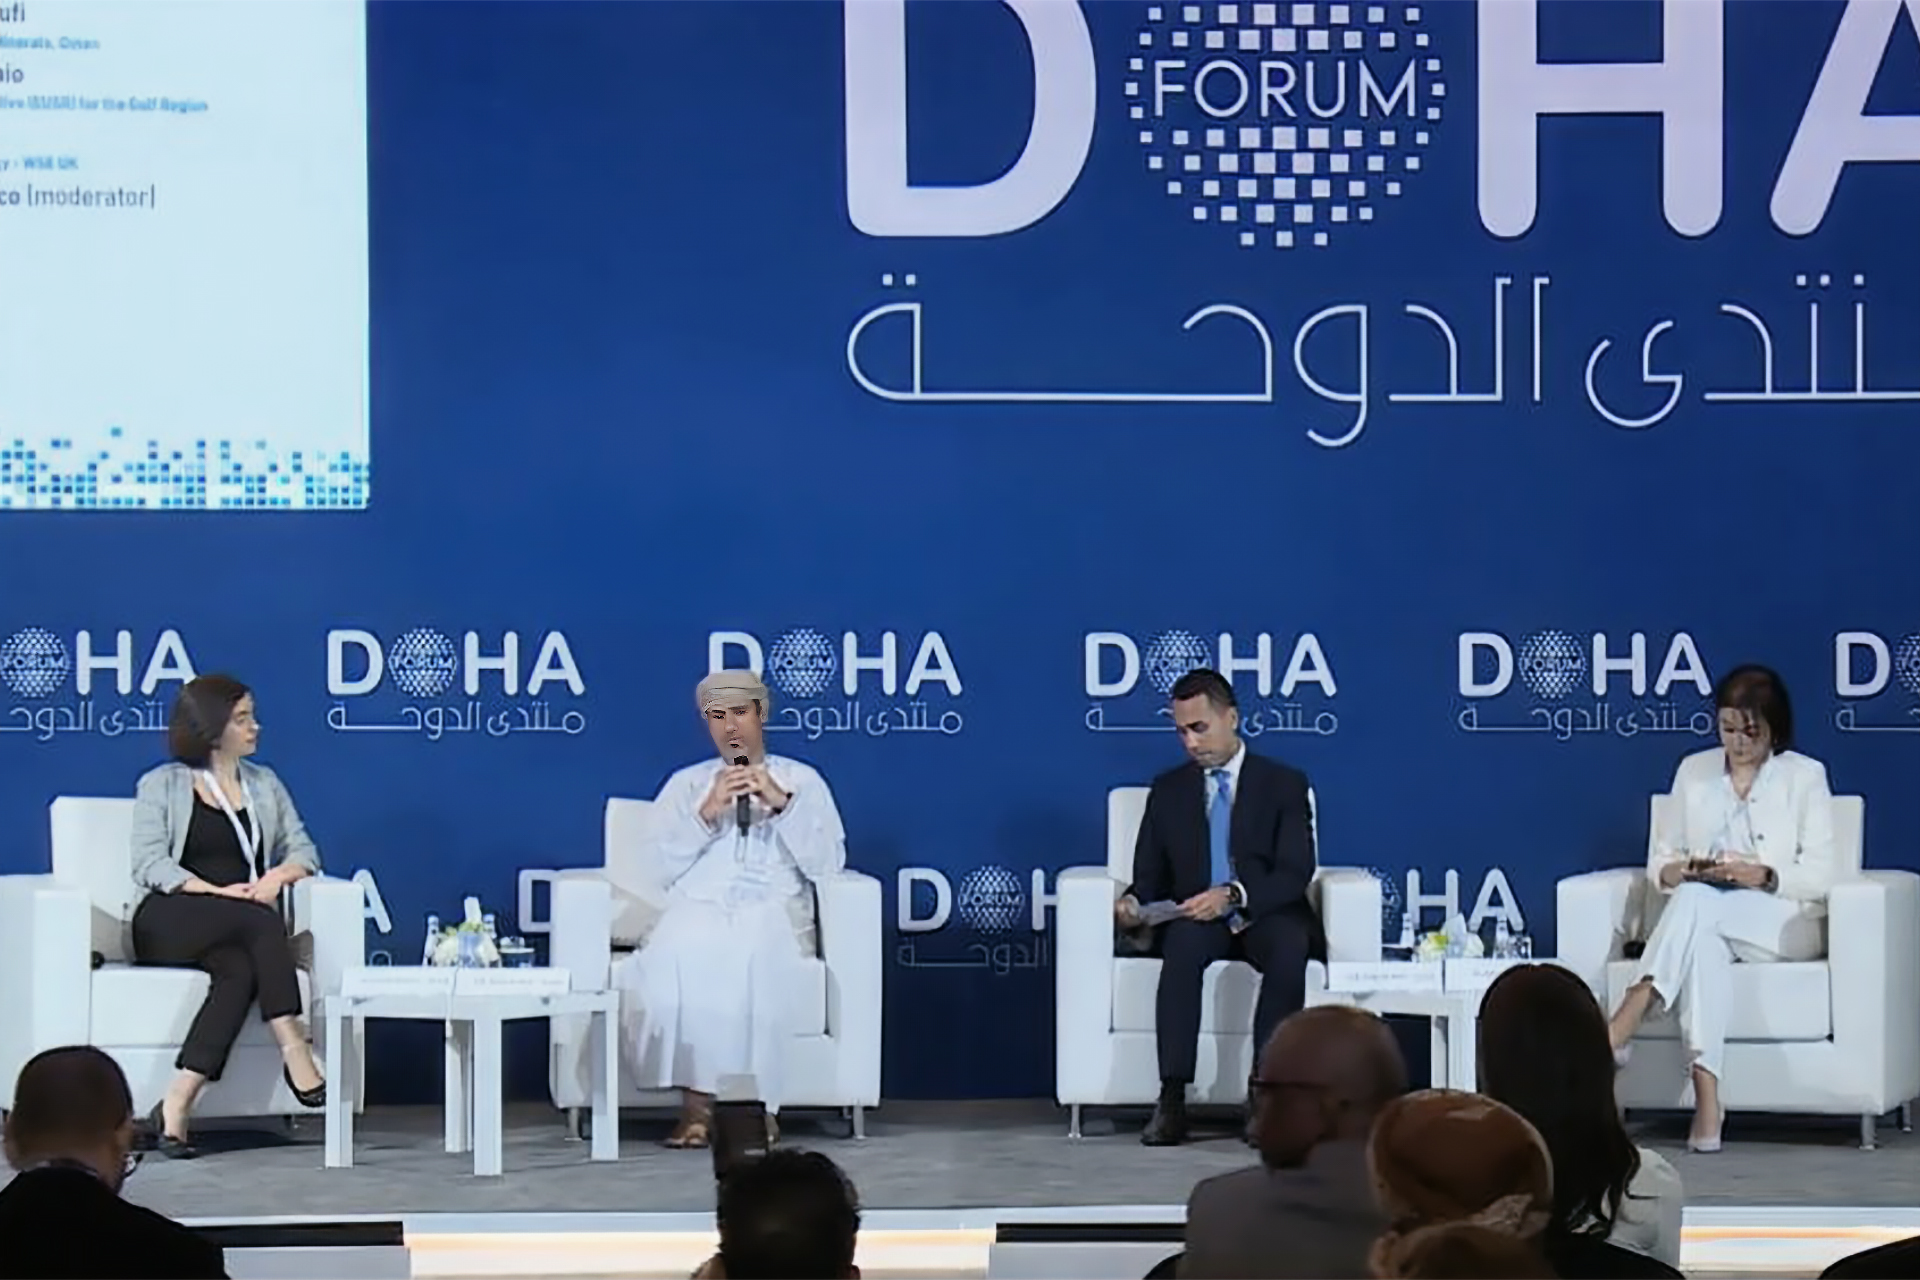 منتدى الدوحة.. الطاقة تفرض علاقات بمعايير جديدة بين الخليج وأوروبا | اقتصاد – البوكس نيوز